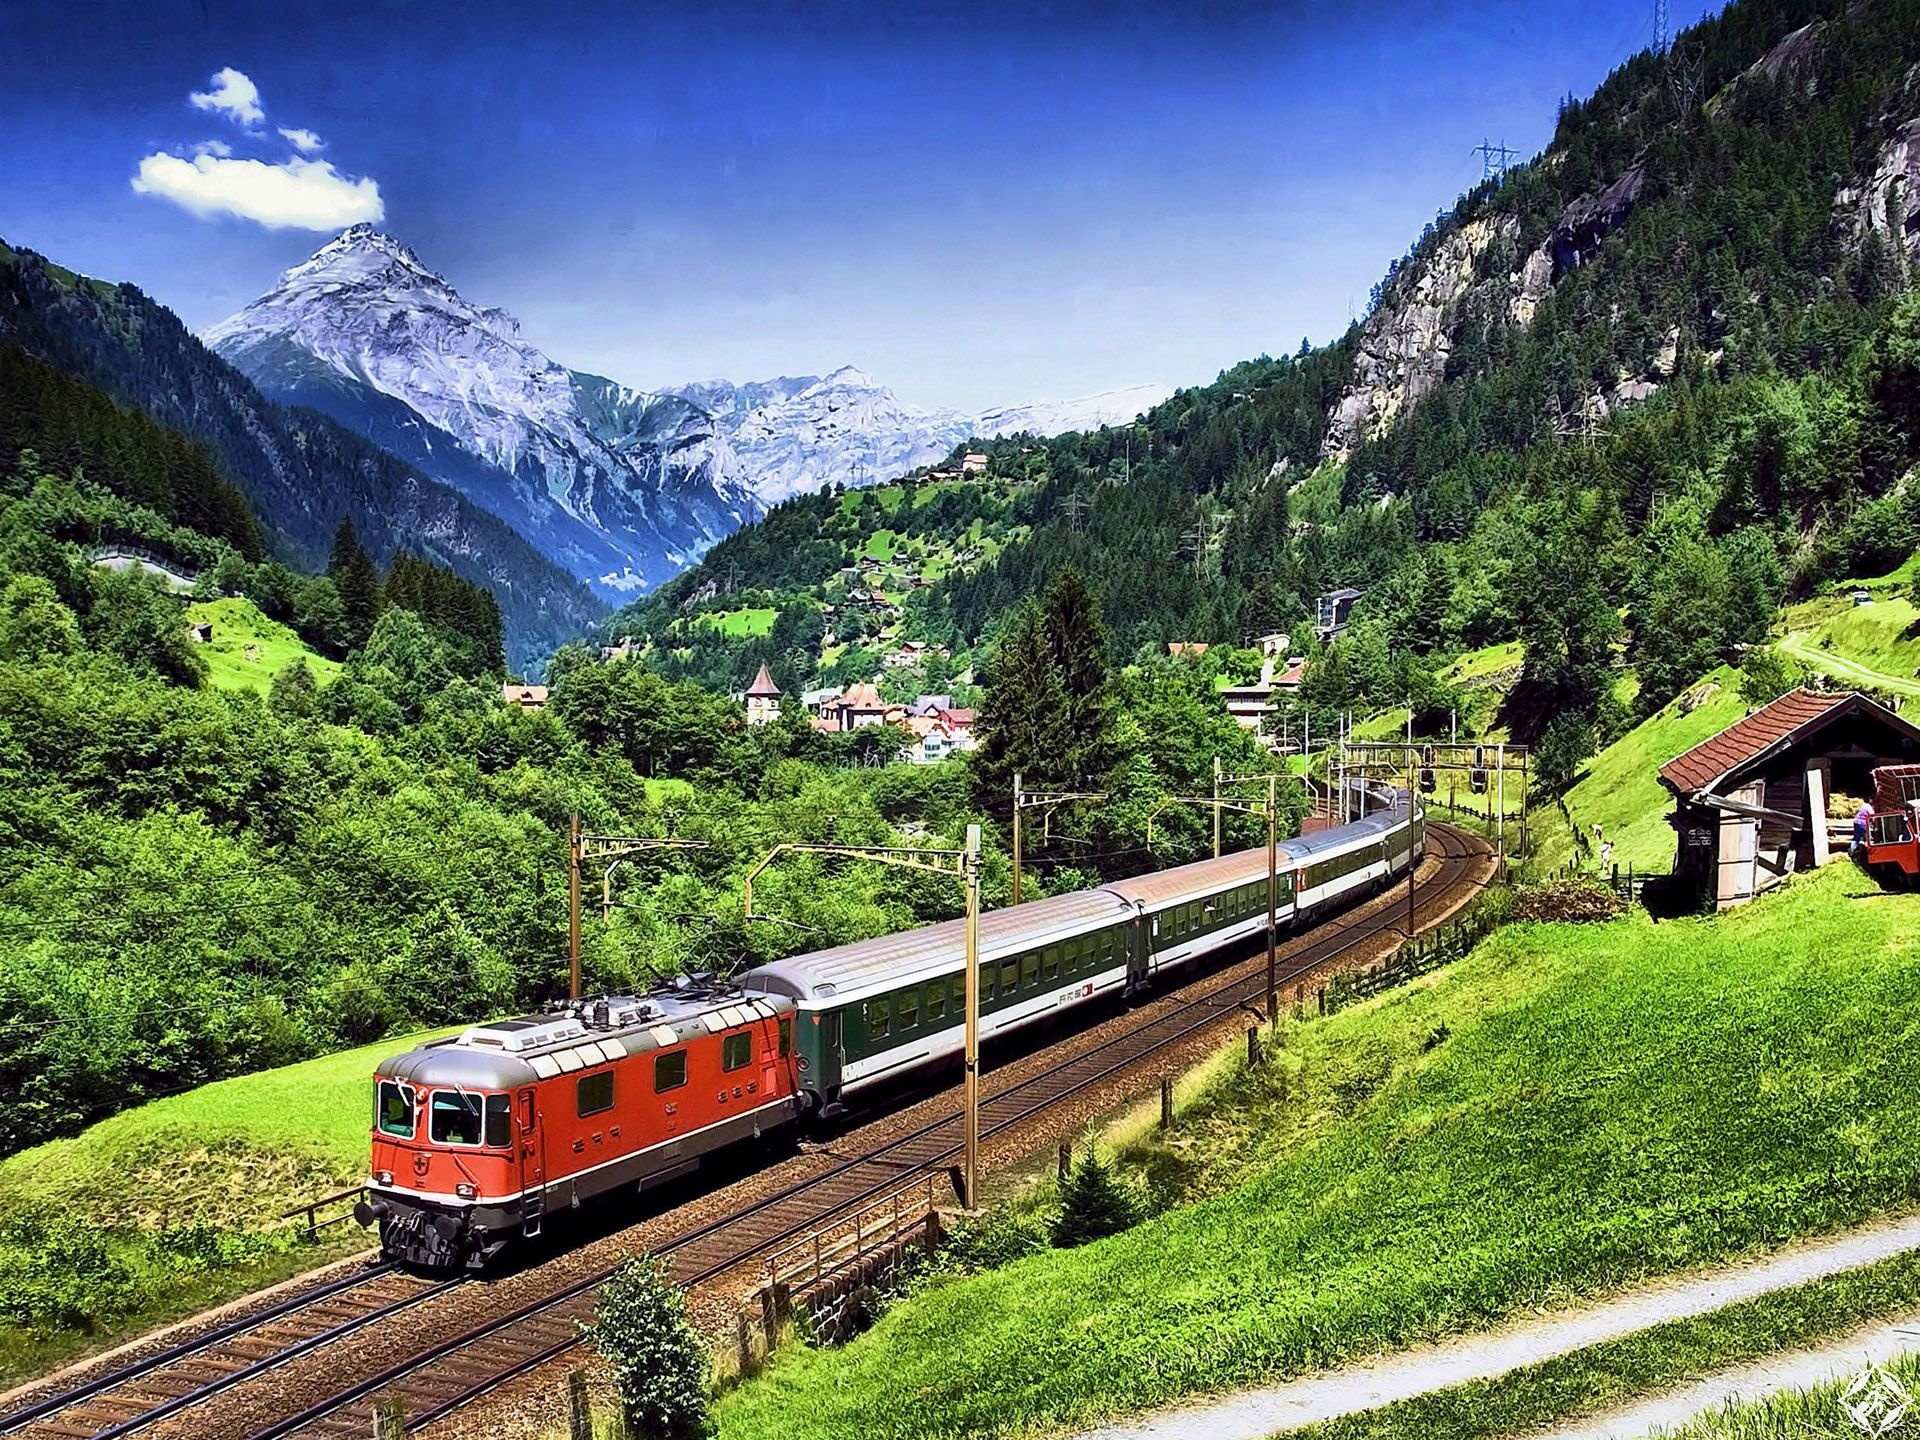 Long train journey. Железная дорога Флом. Красивый поезд. О поездах и железной дороге. Швейцария поезд.